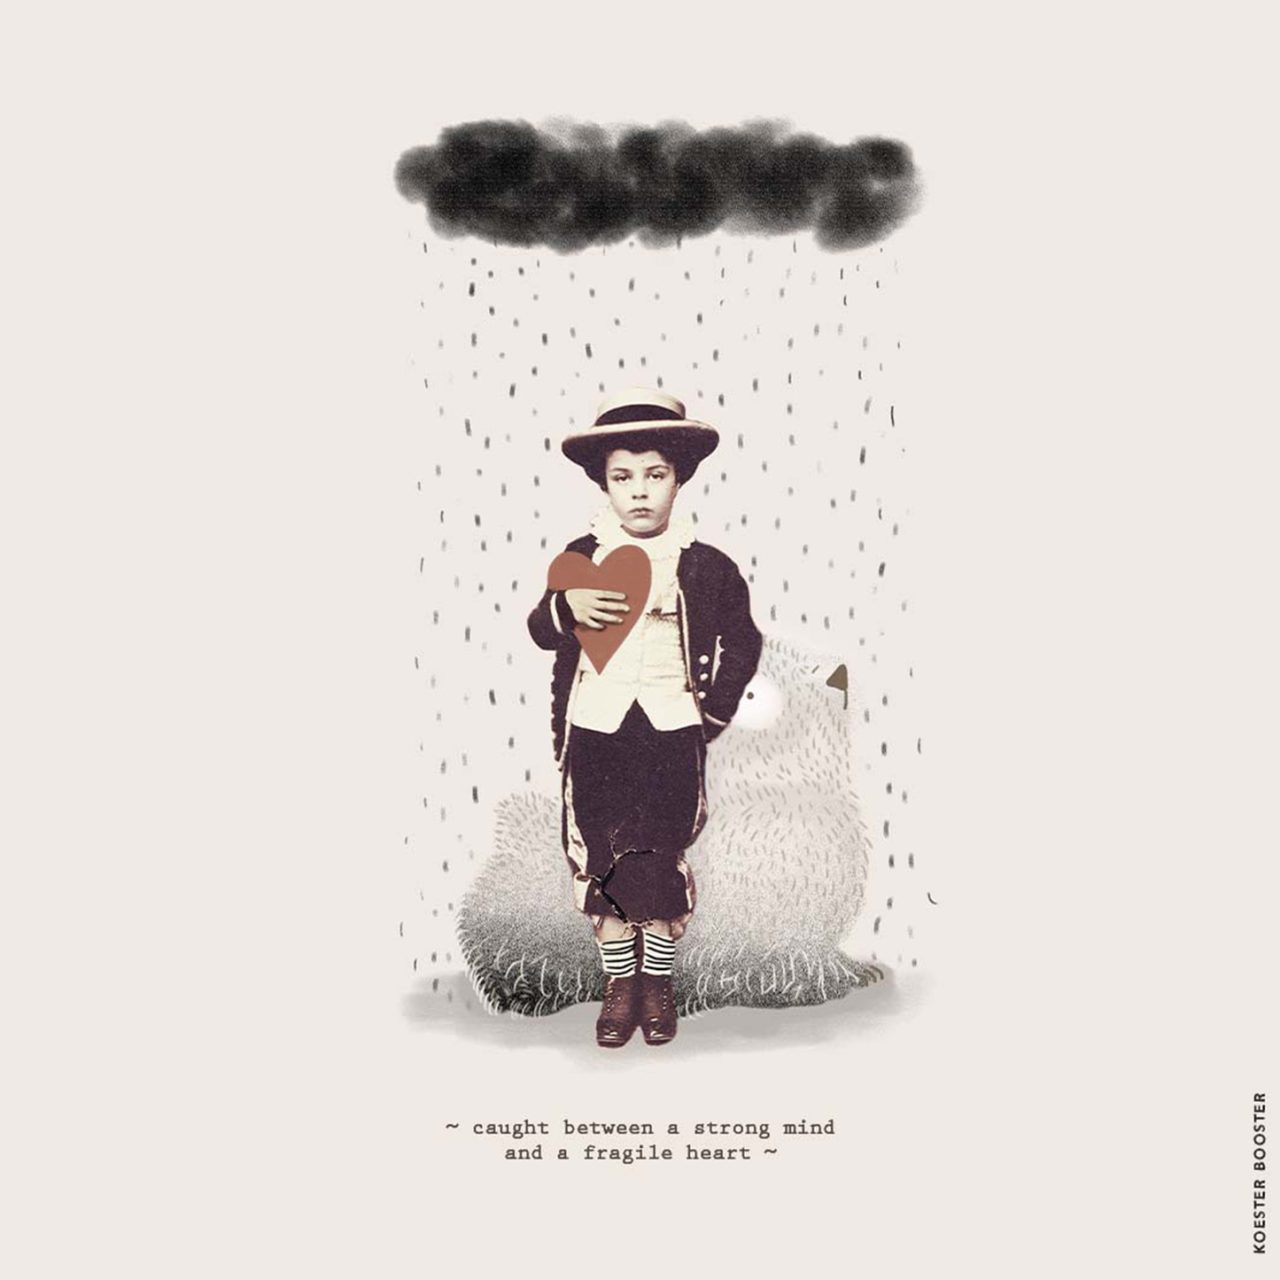 illustratie met oude foto van jongetje met regenwolk en quote over een strongmind and fragiel heart